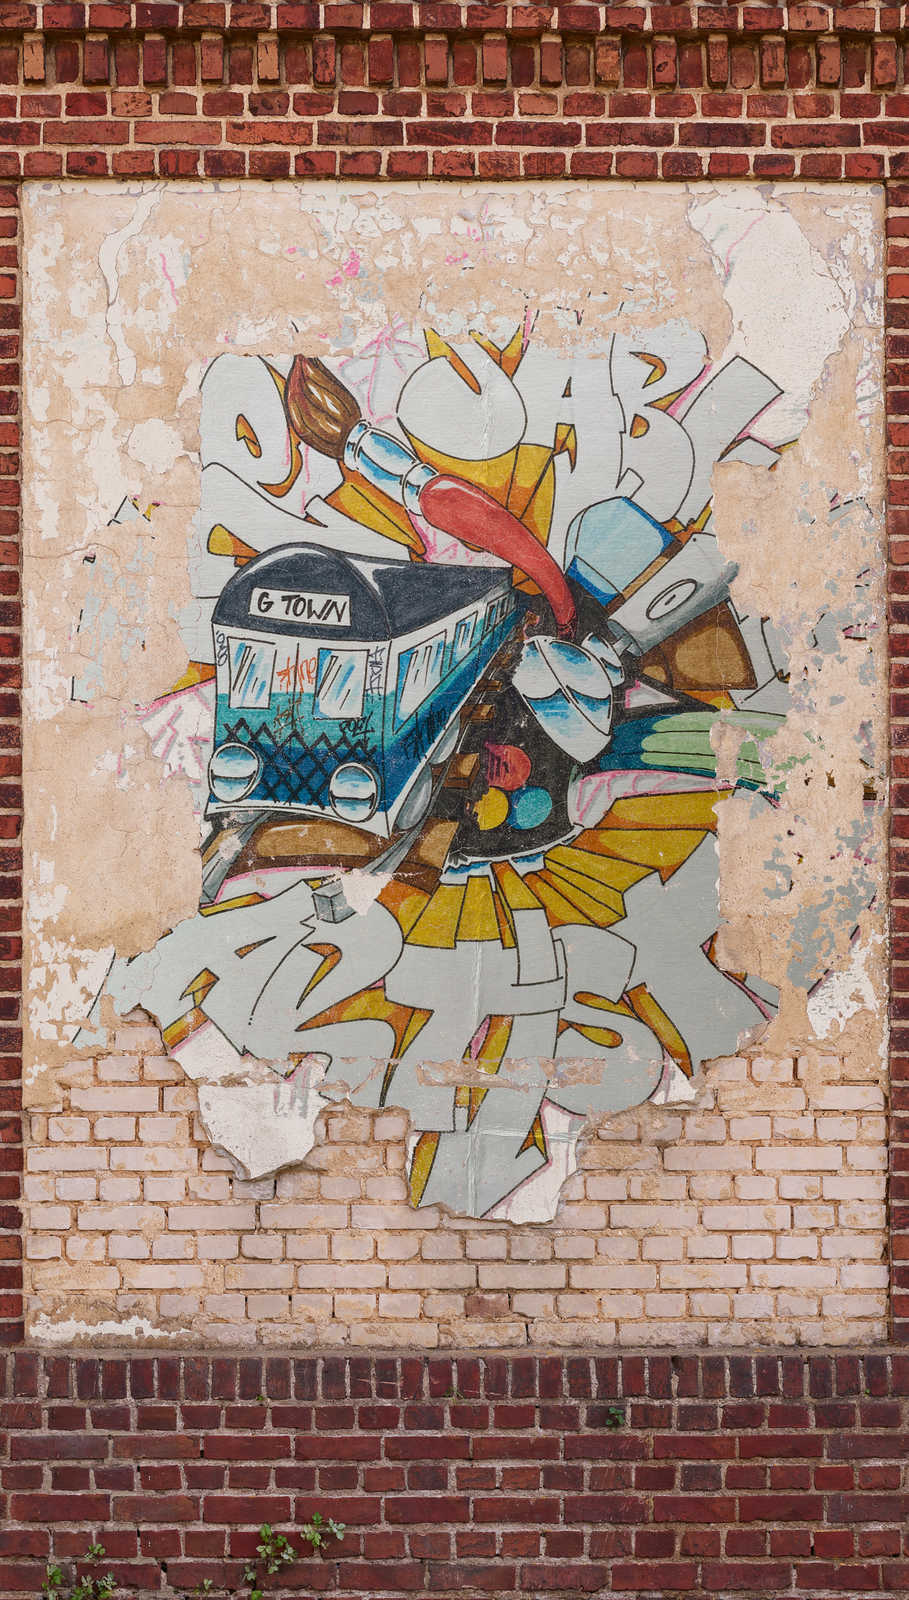             Papier peint imitation briques avec graffitis colorés - marron, beige, rouge
        